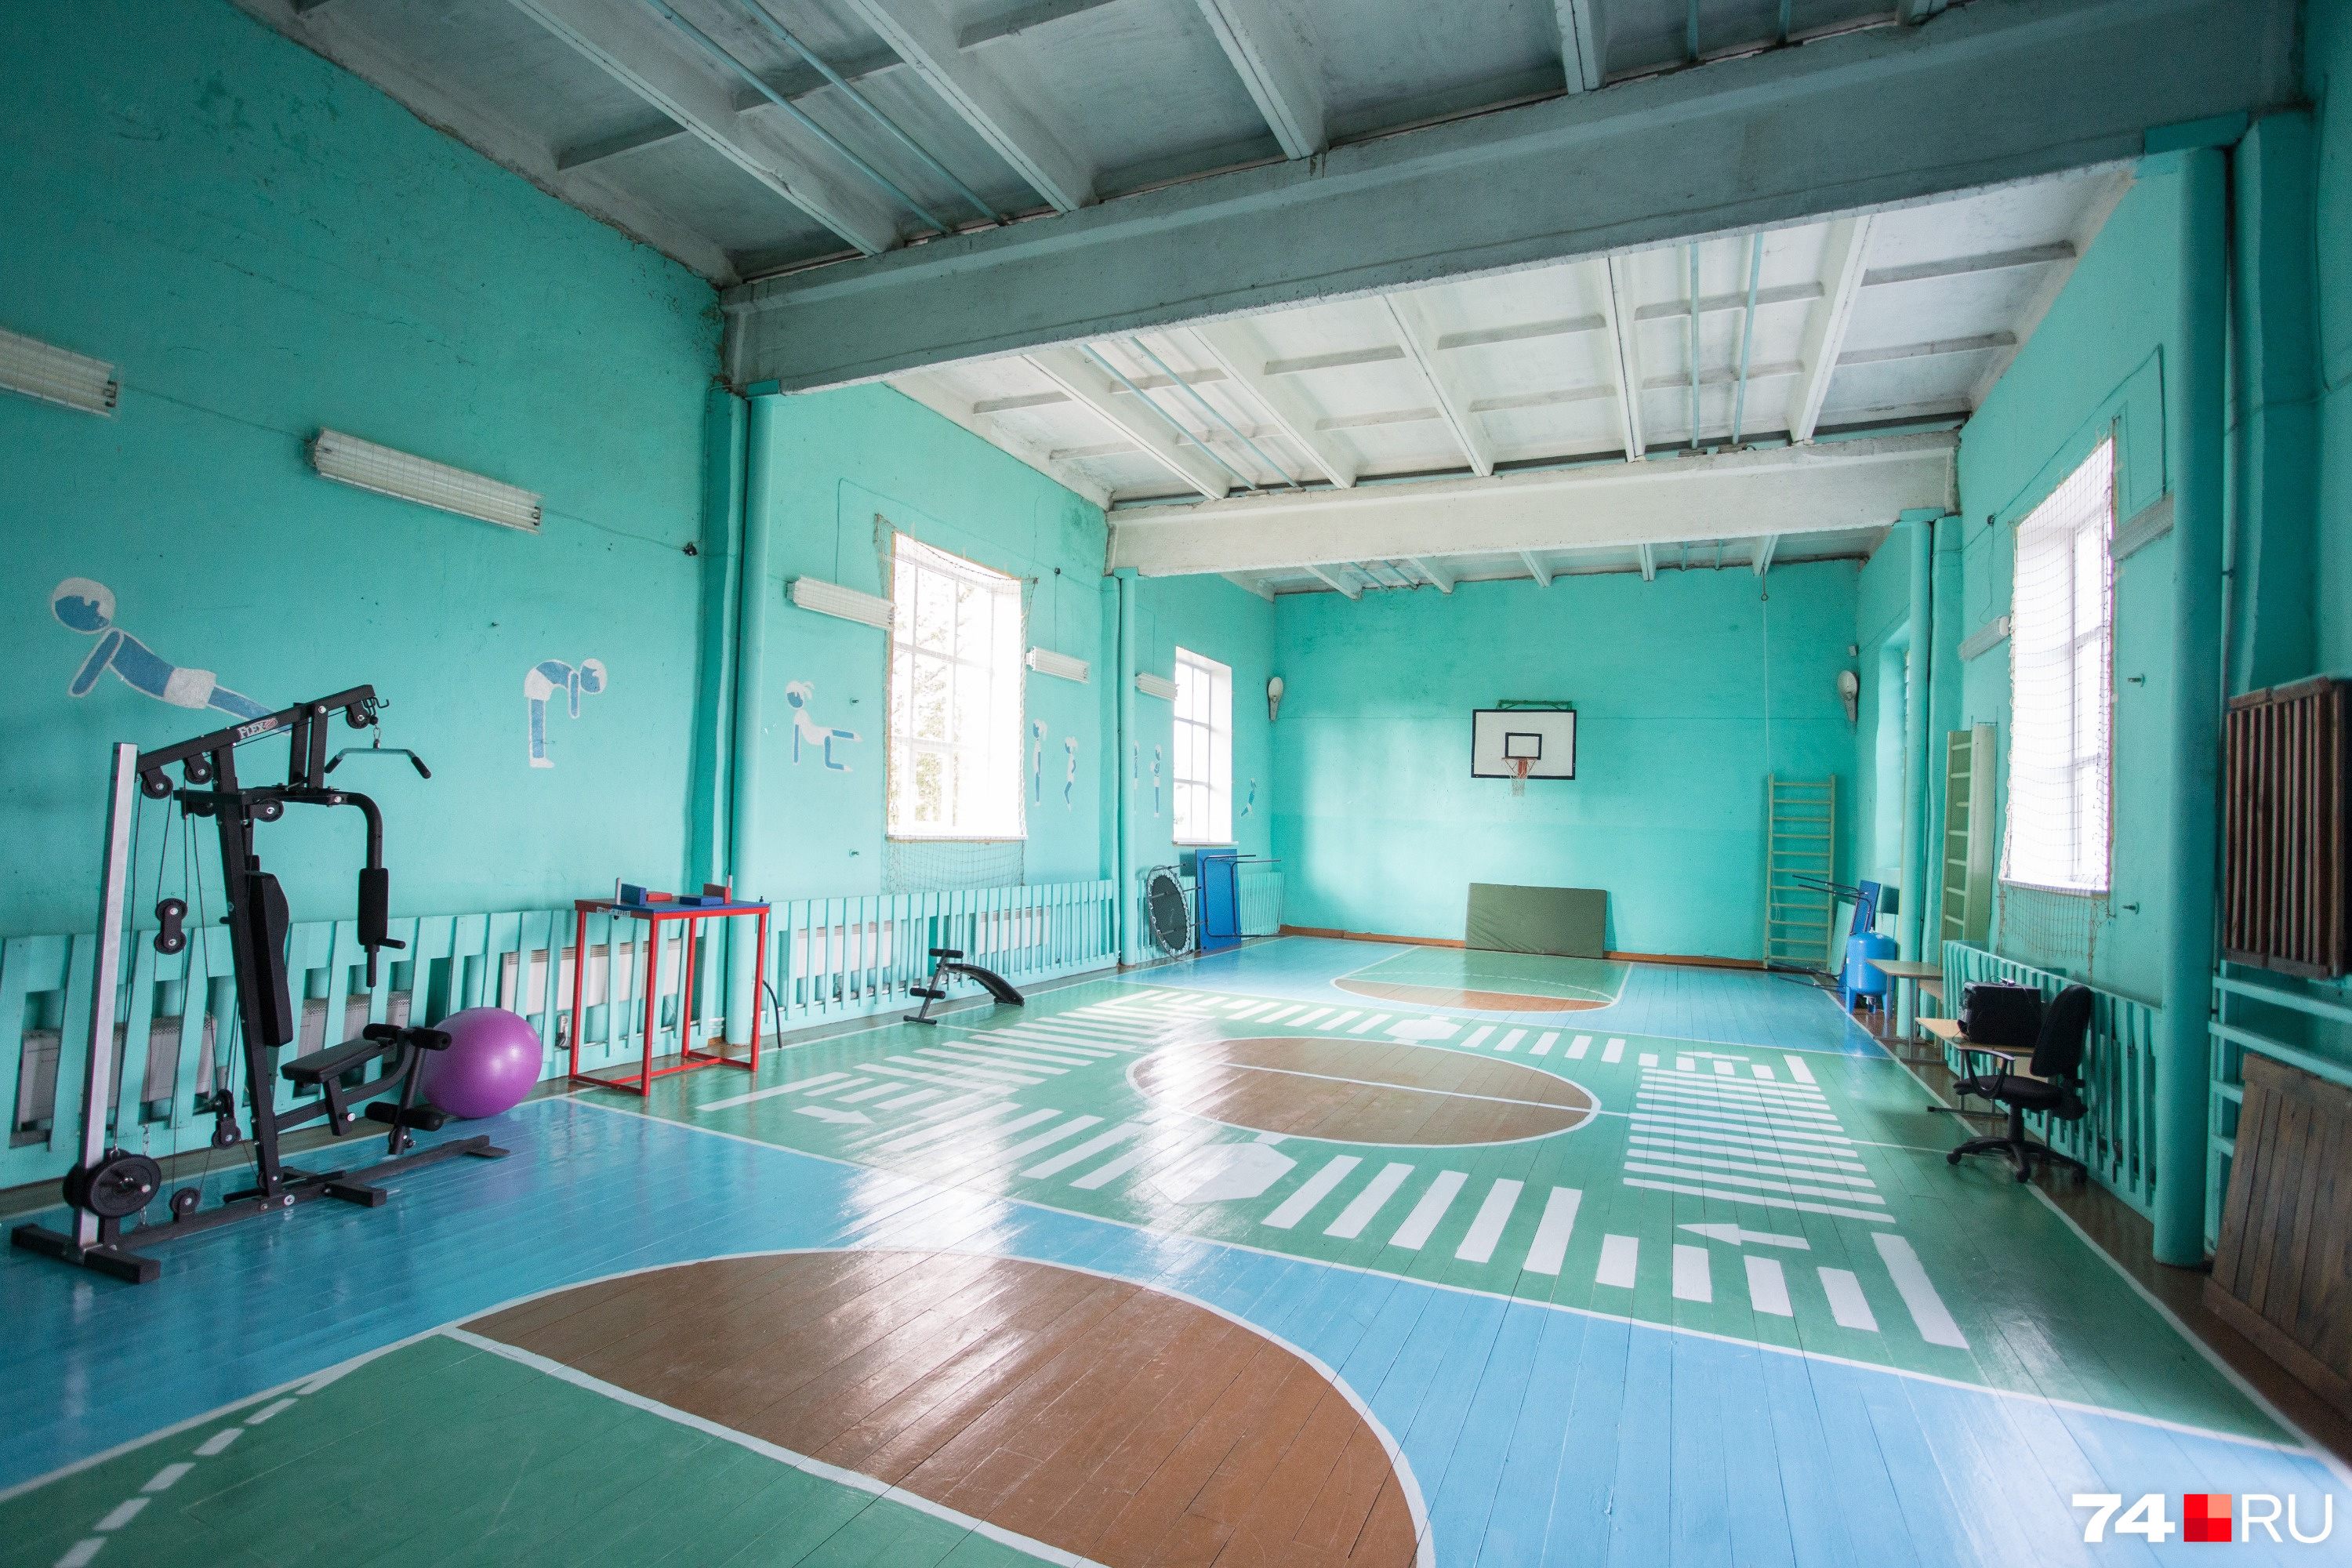 Спортзал — самое современное здание в школе